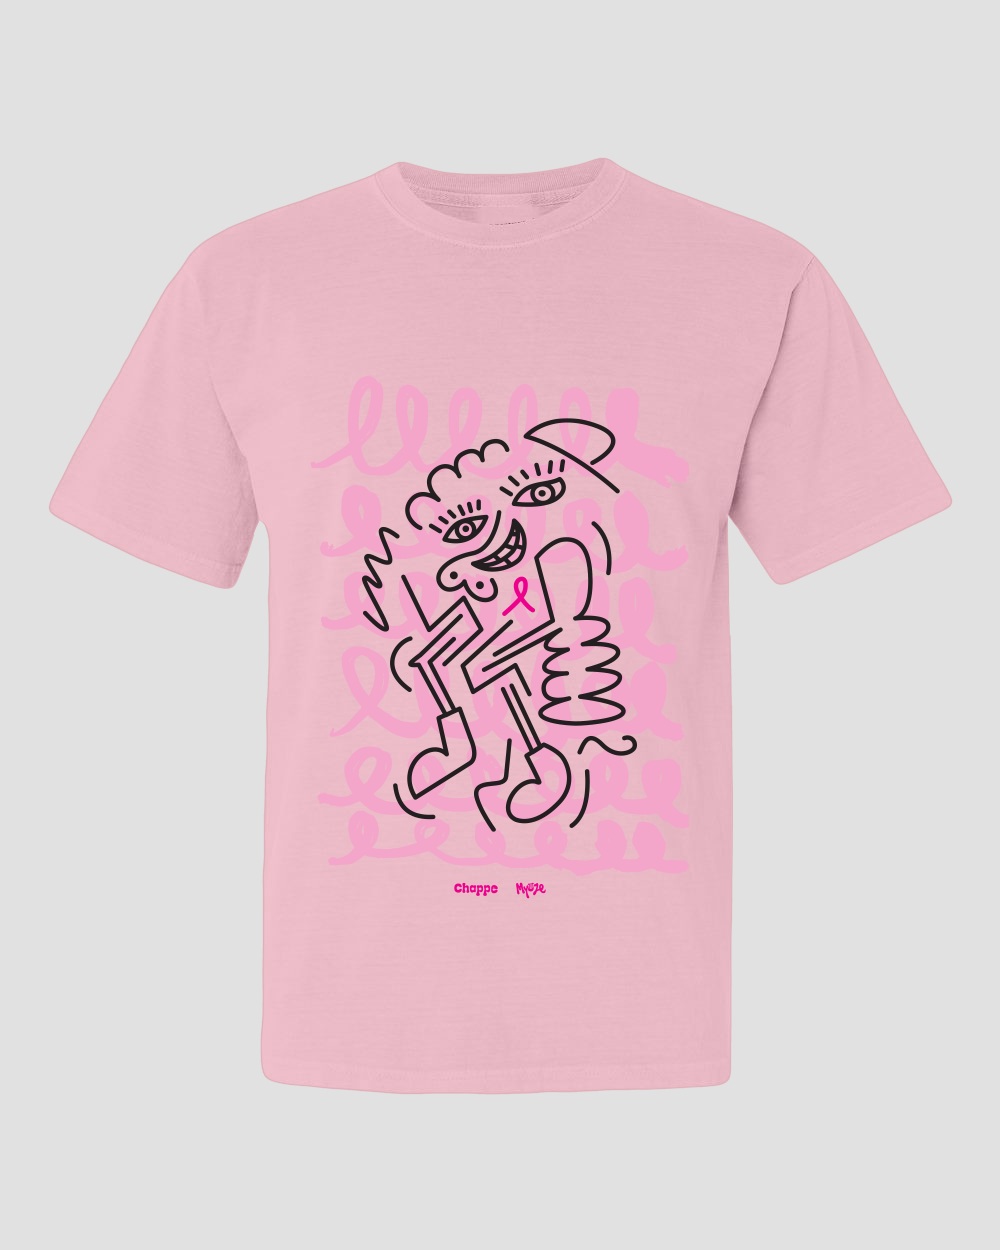 Abstract Ribbon - Breast Cancer Awareness T-Shirt